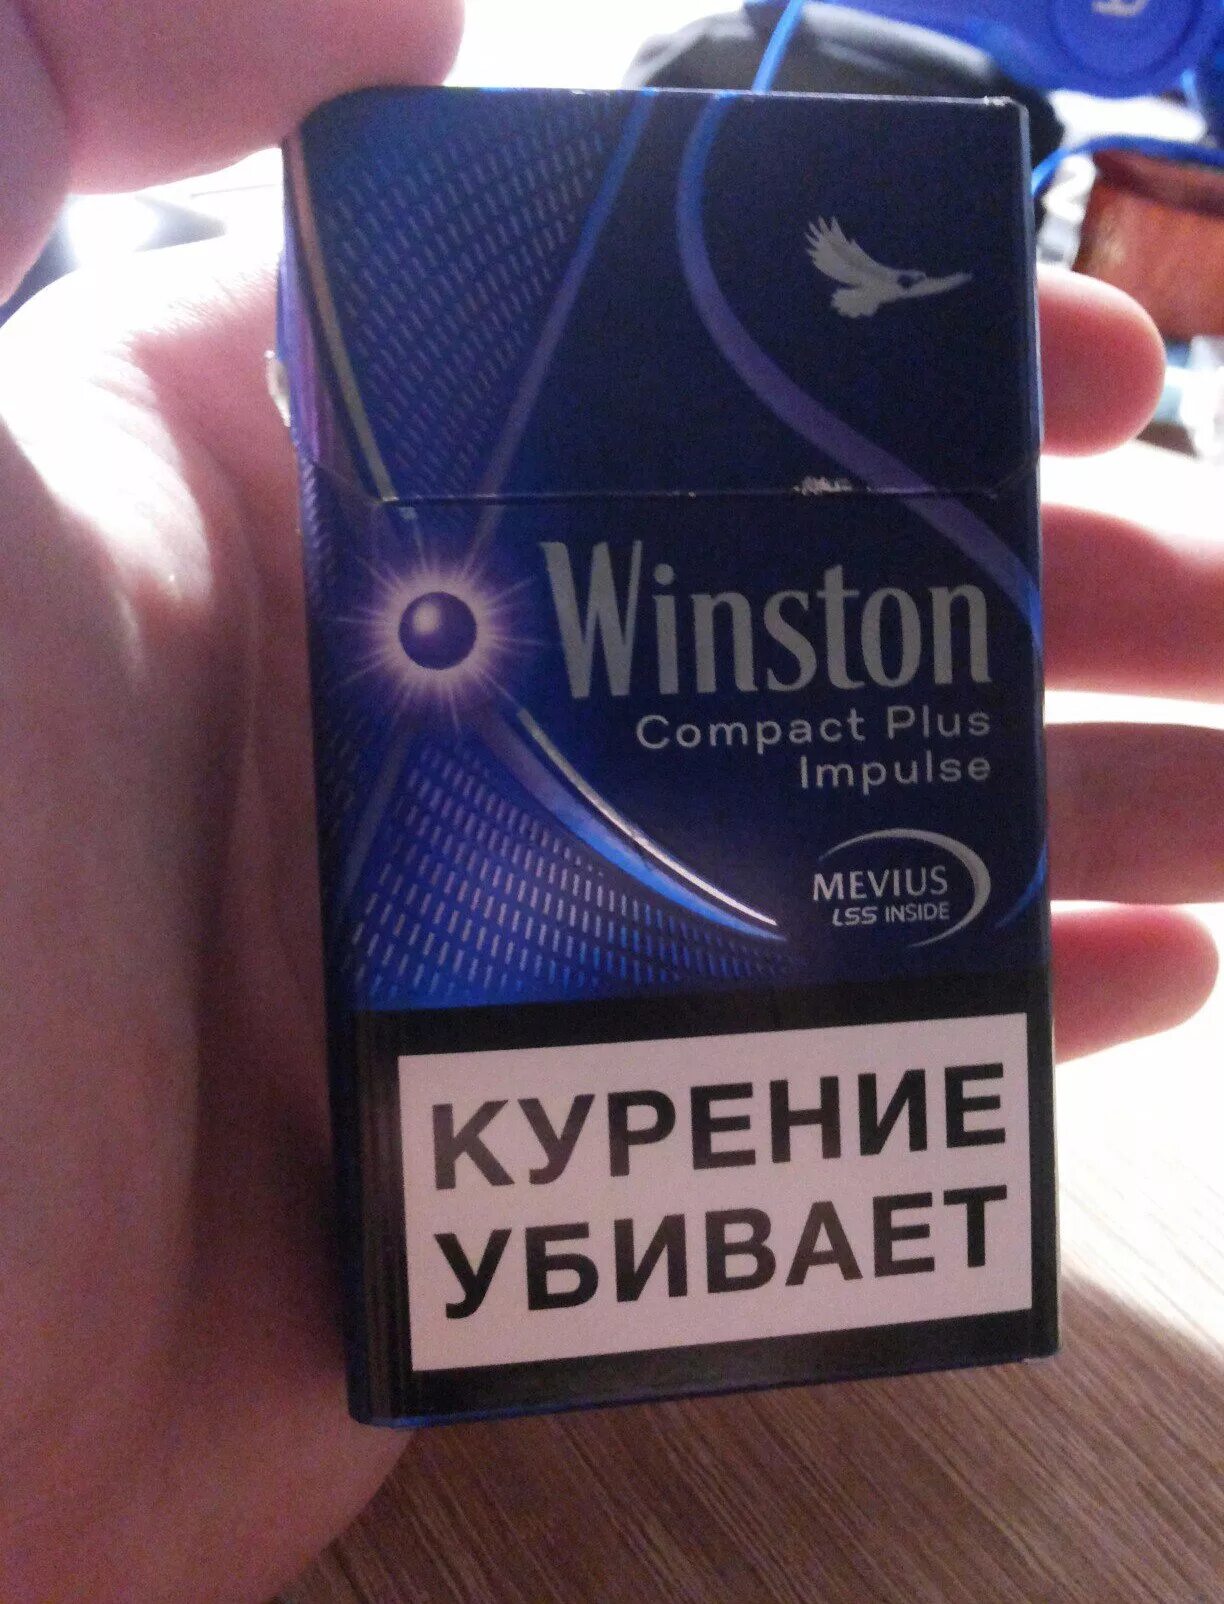 Сигареты Винстон тонкие с кнопкой. Сигареты Winston Compact с кнопкой. Сигареты Winston xstyle Duo. Winston xstyle Compact с кнопкой. Винстон компакт фиолетовый